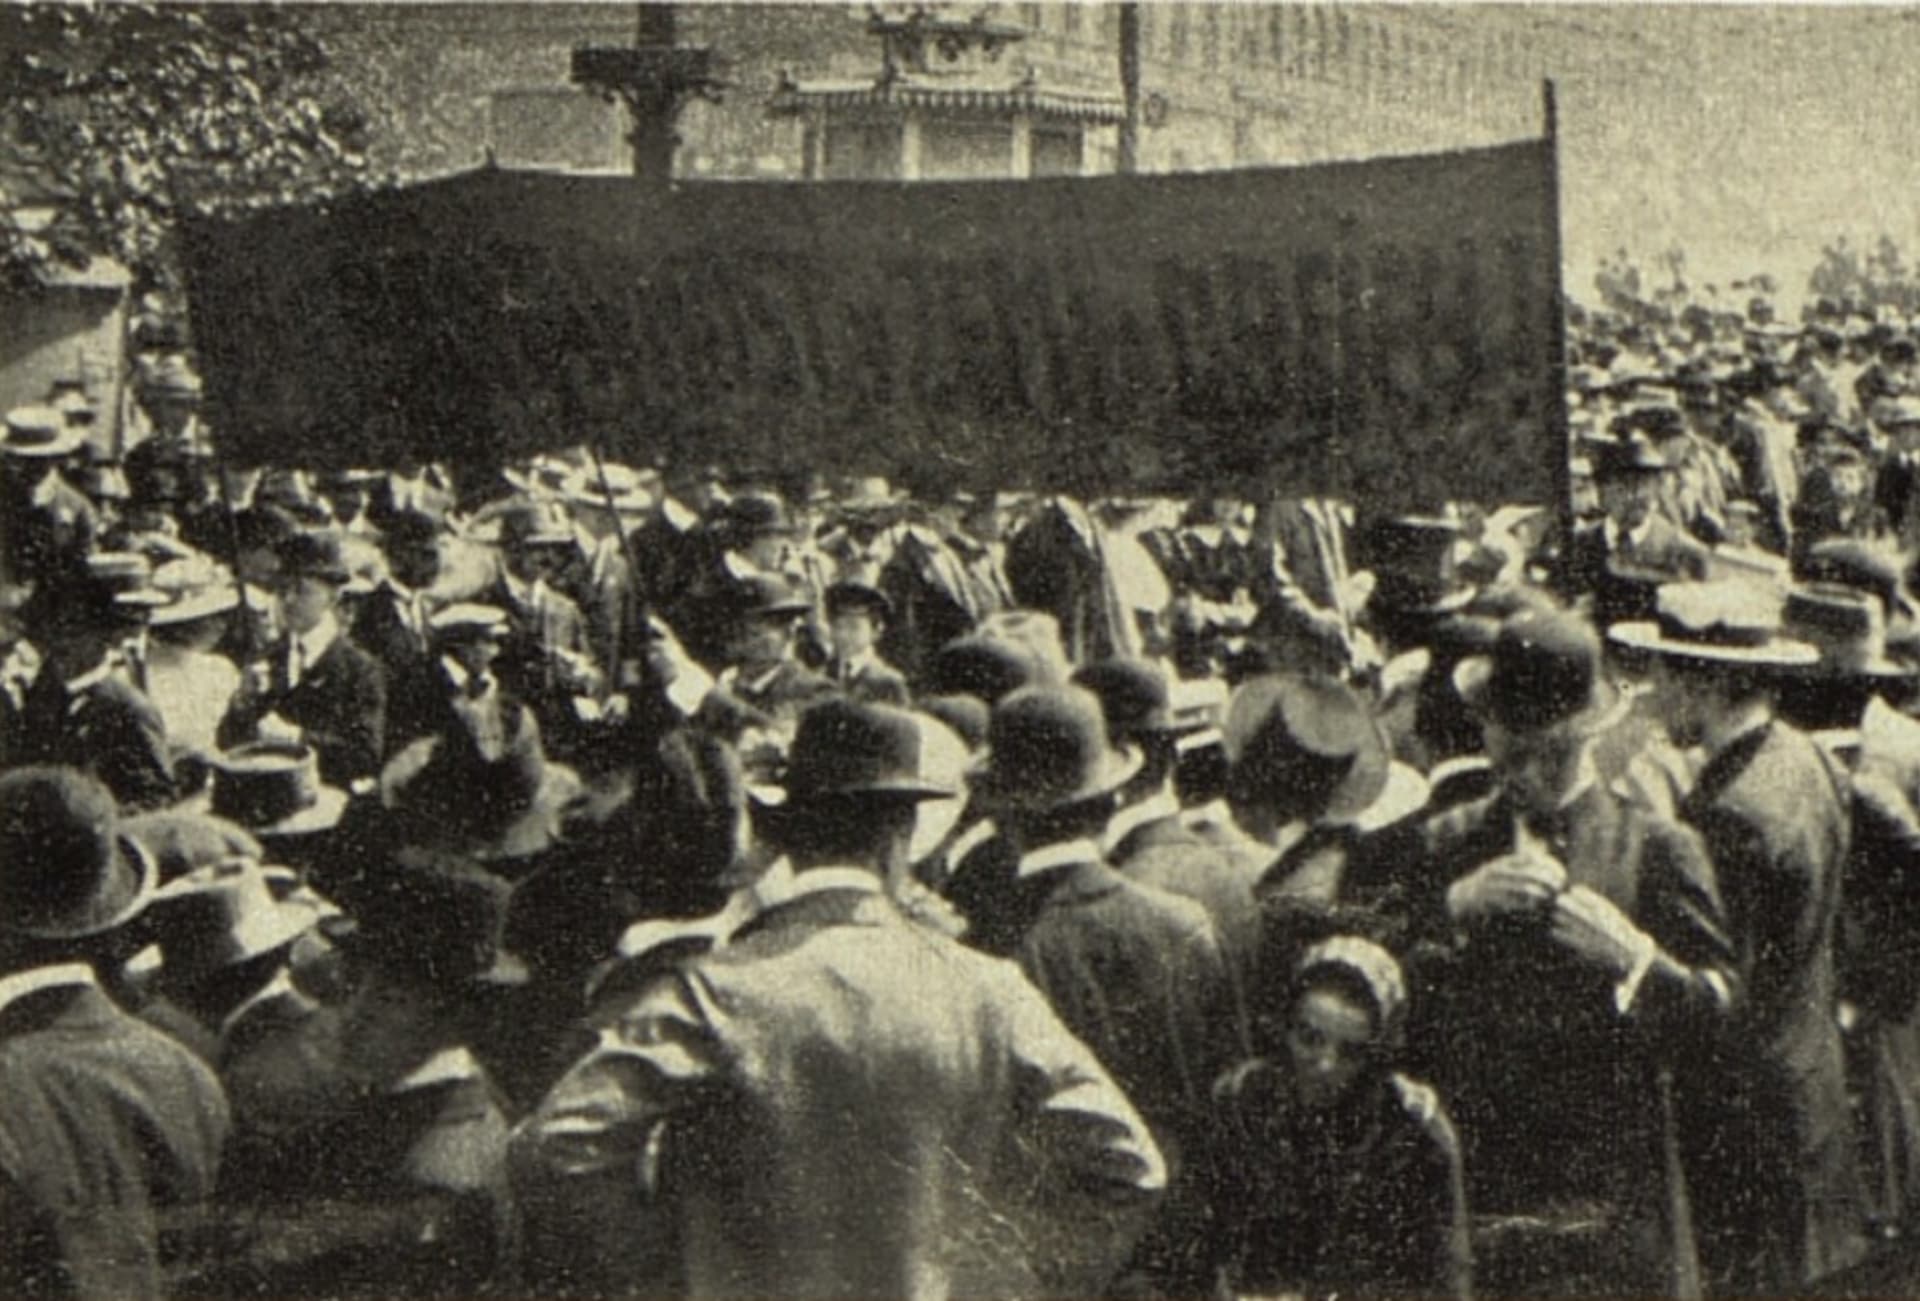 Oslavy Svátku práce v Praze roku 1913, v reportáži časopisu Světozor. Snímek z prvních oslav v roce 1890 není znám.